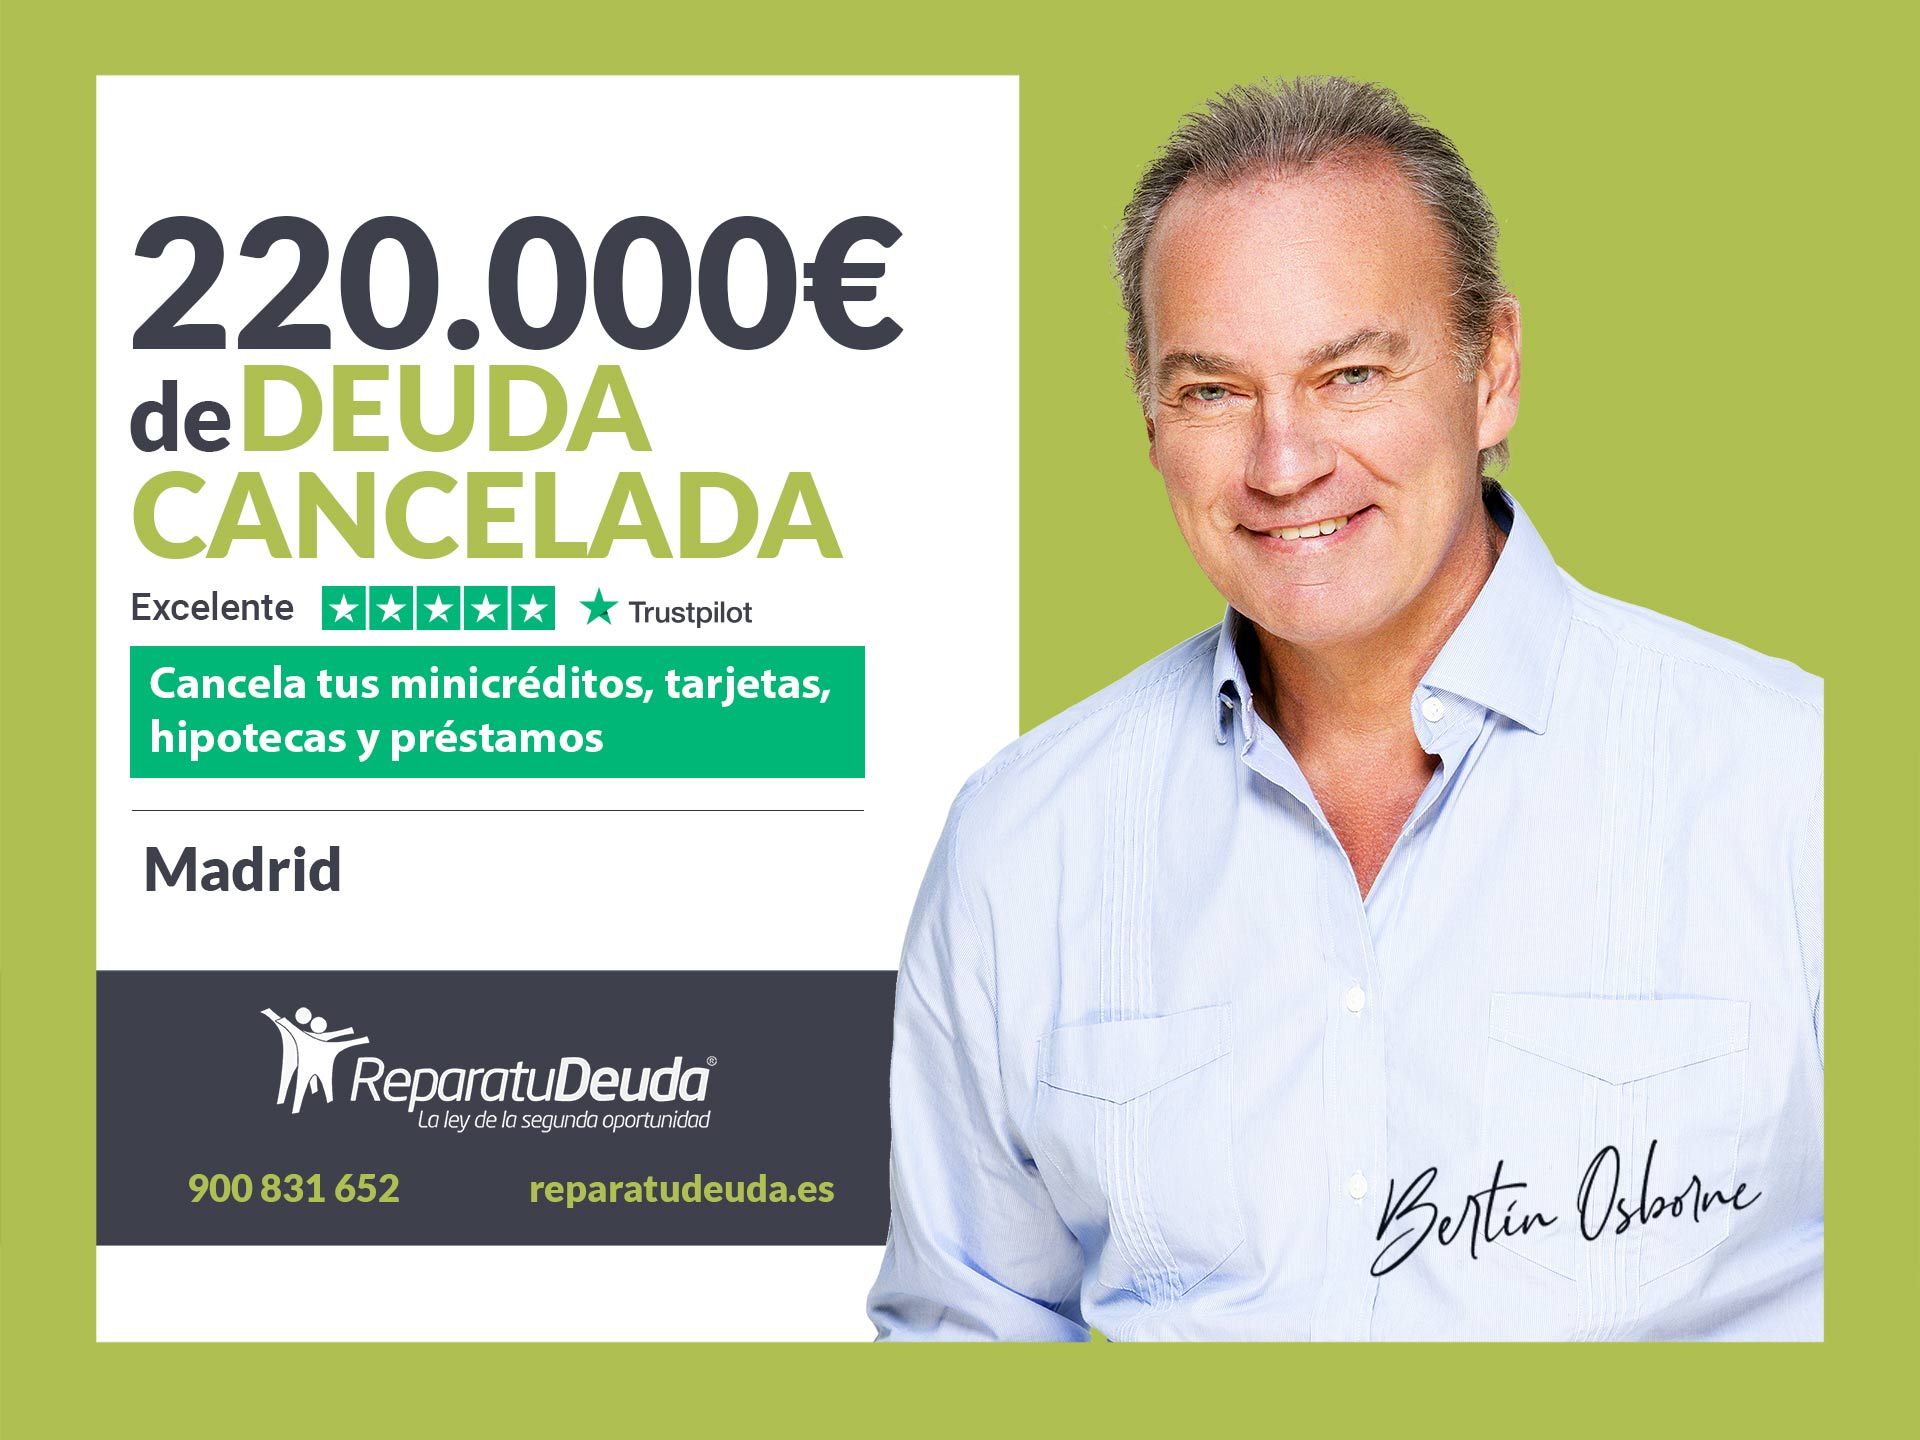 Repara tu Deuda Abogados cancela 220.000? en Madrid con la Ley de Segunda Oportunidad